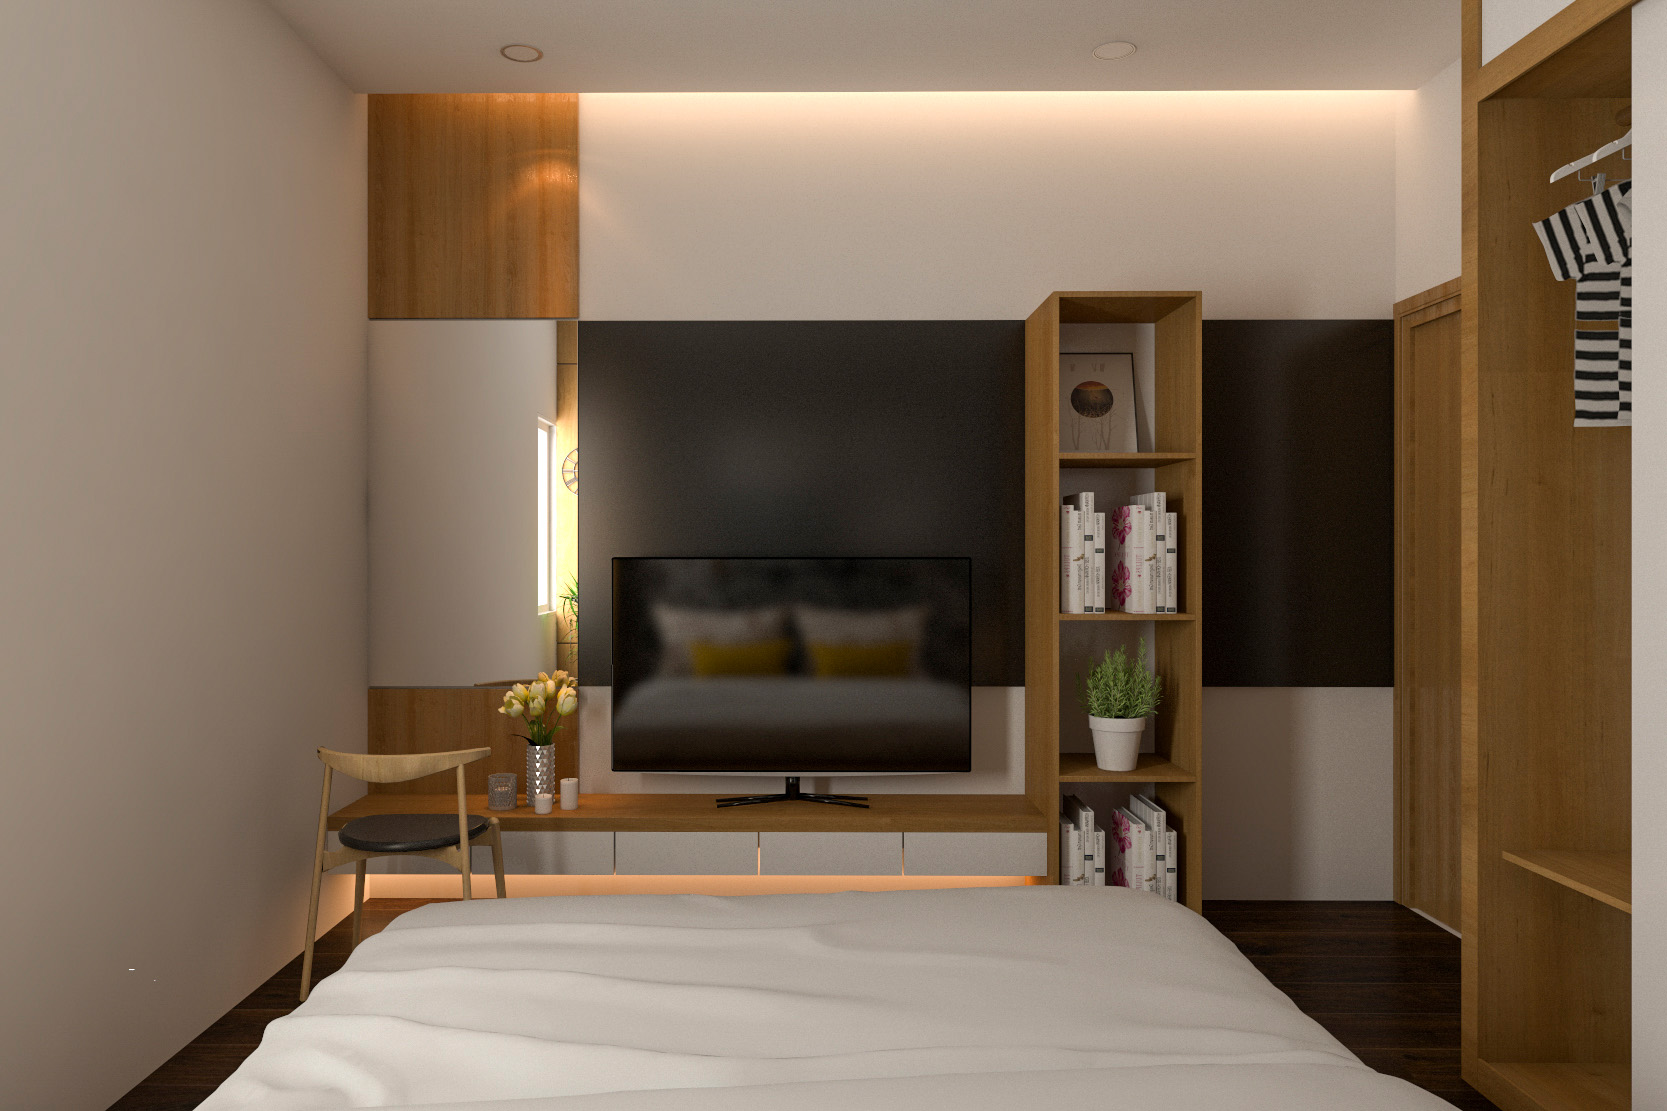 Phòng ngủ, phong cách hiện đại Modern, thiết kế concept nội thất, nhà phố Park Riverside